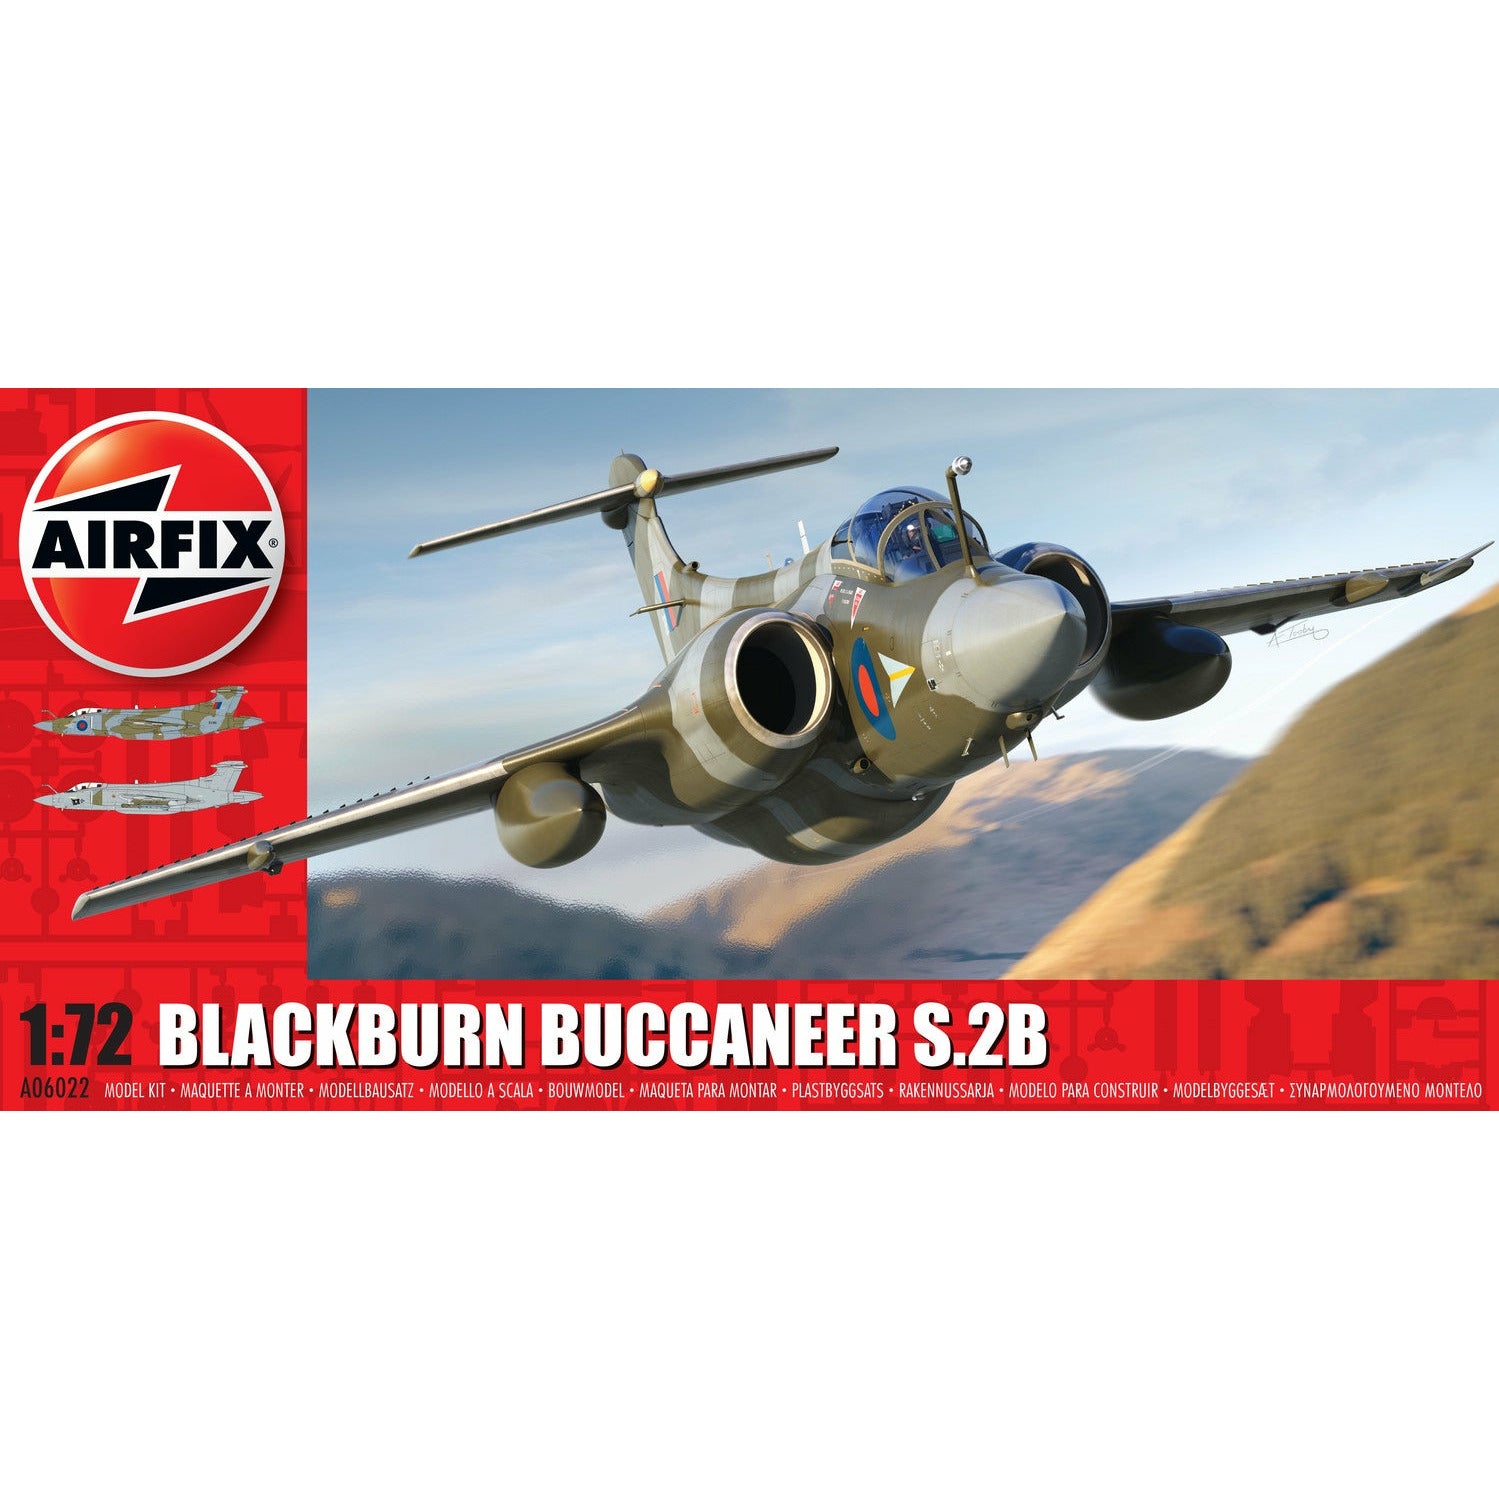 Blackburn Buccaneer S.2 RAF 1/72 #06022 by Airfix